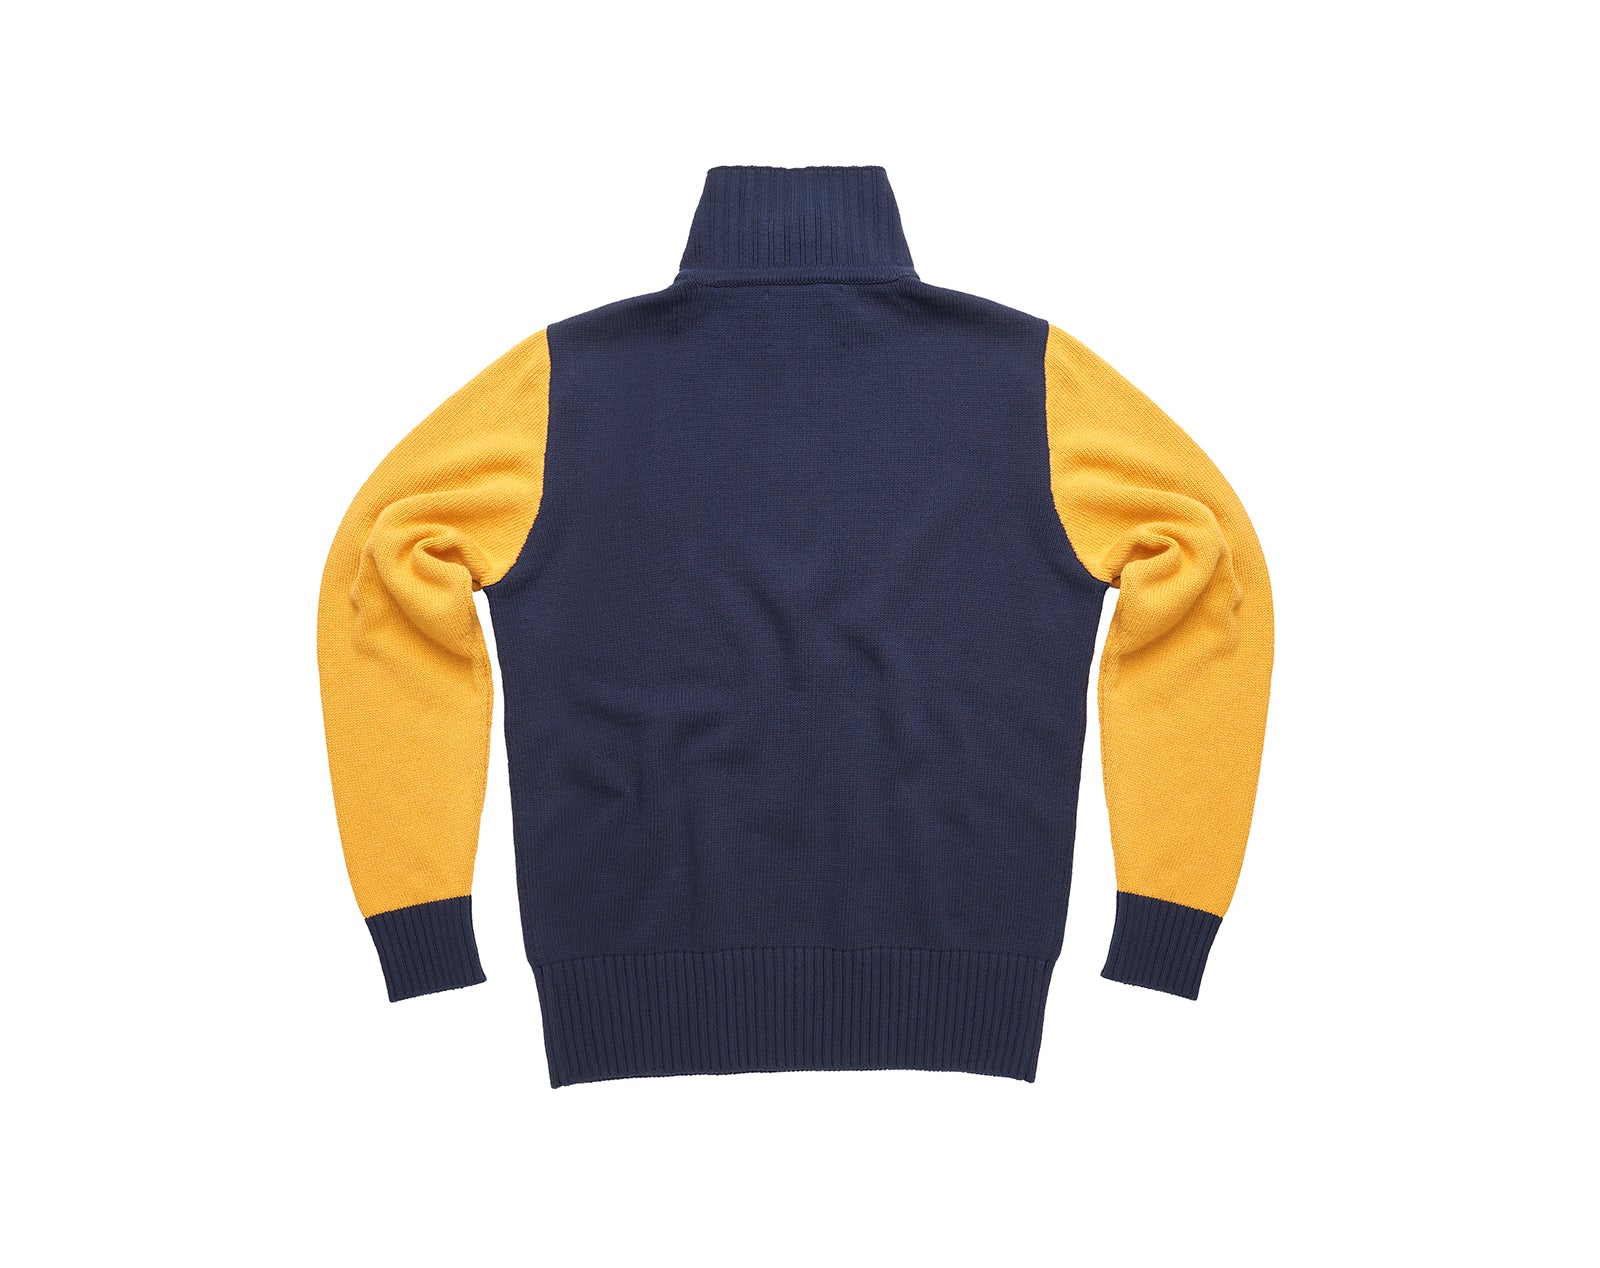 hillclimb-sweater-back_1800x1800.jpg